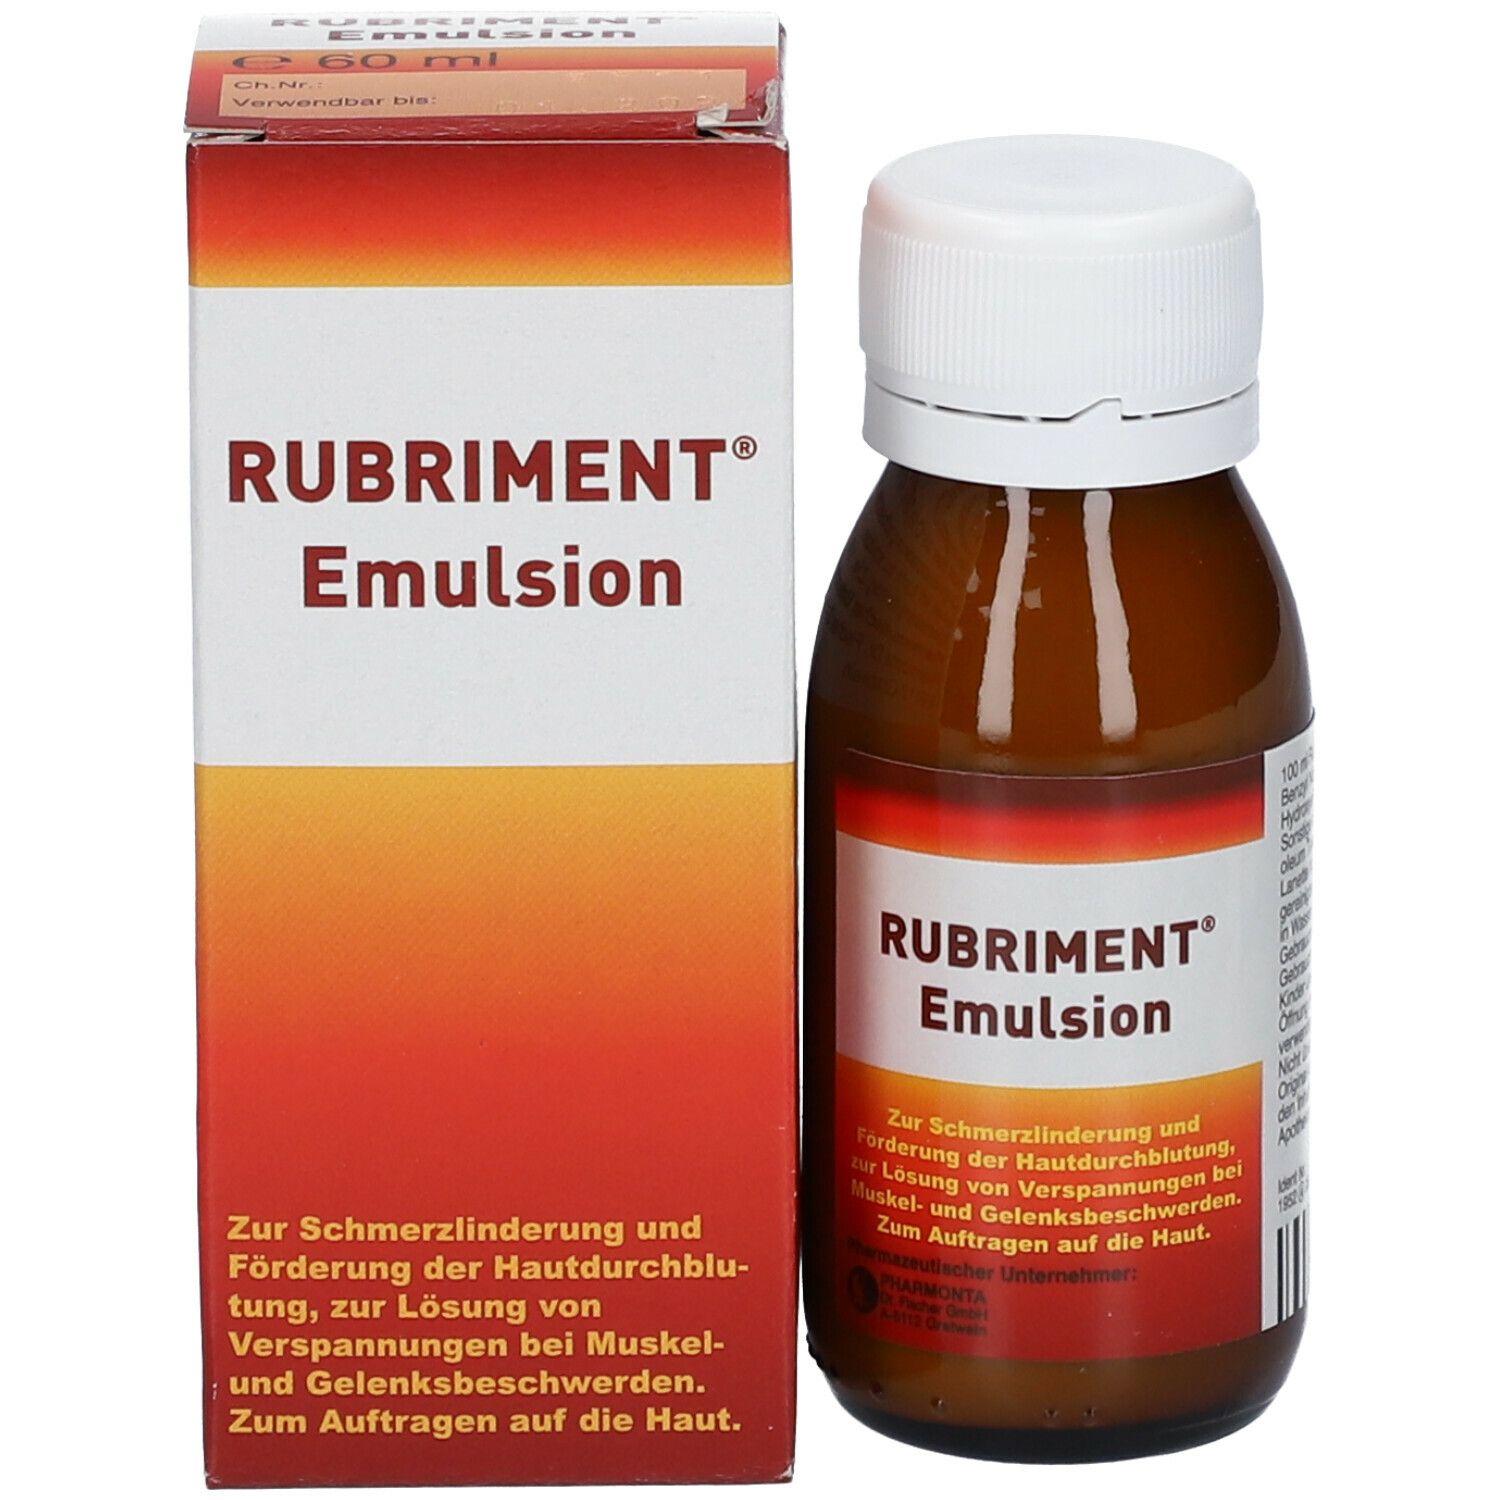 RUBRIMENT® Emulsion